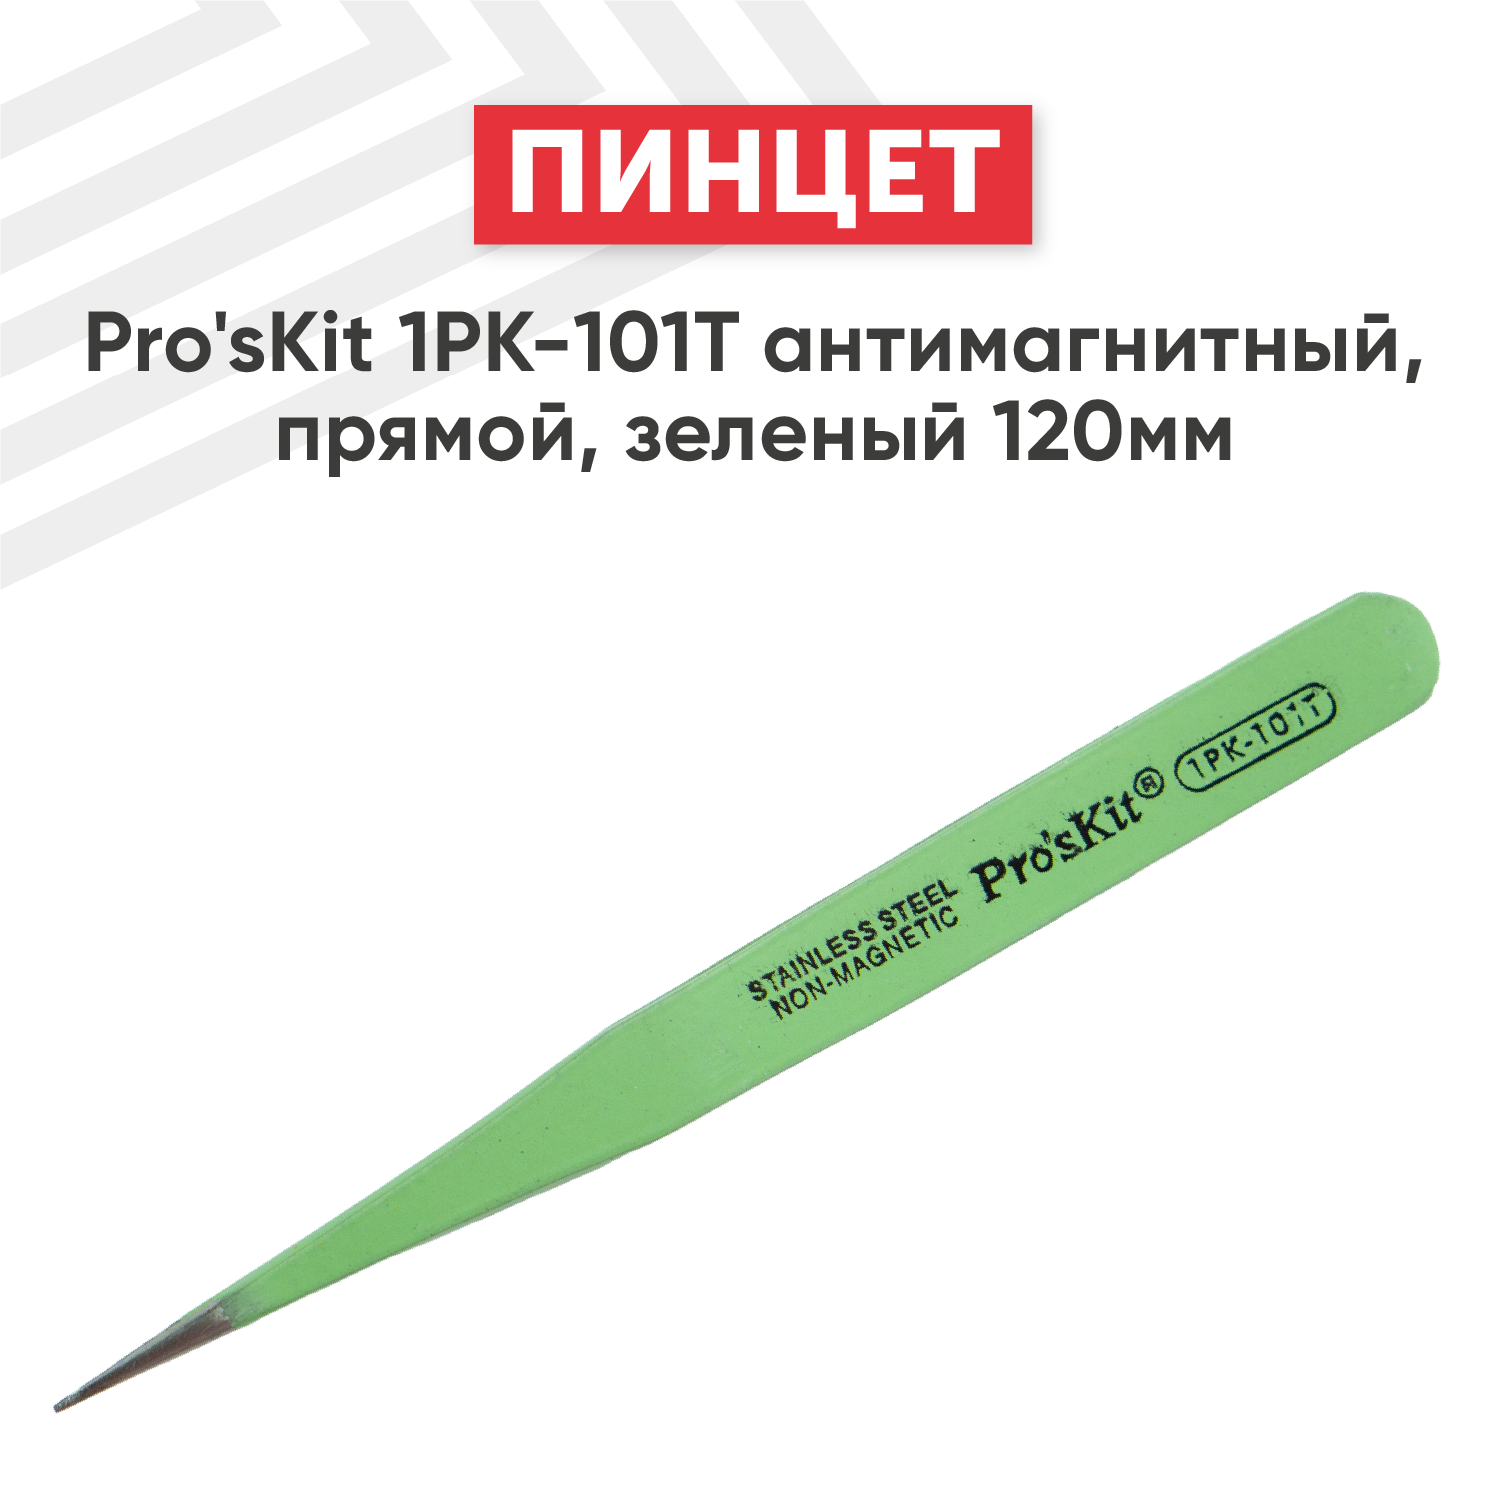 Пинцет Pro'sKit 1PK-101T антимагнитный, прямой, 120мм, зеленый